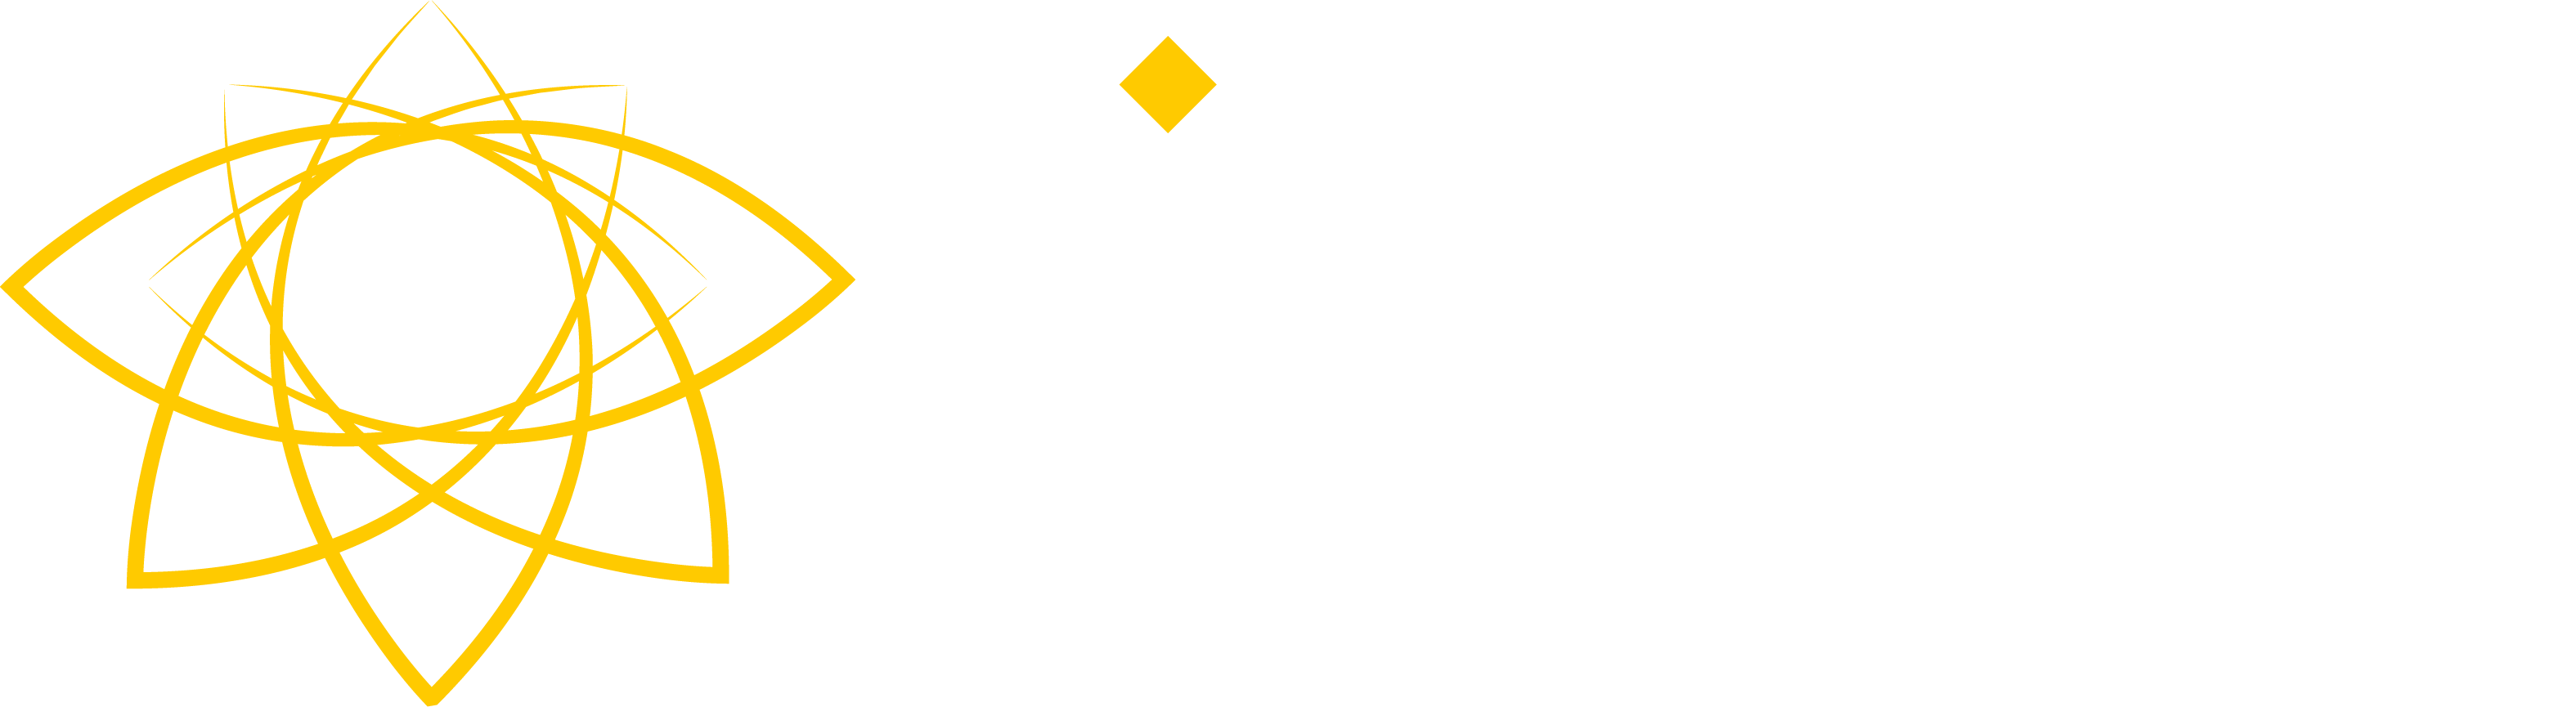 www.fireflycoffeeroasters.com